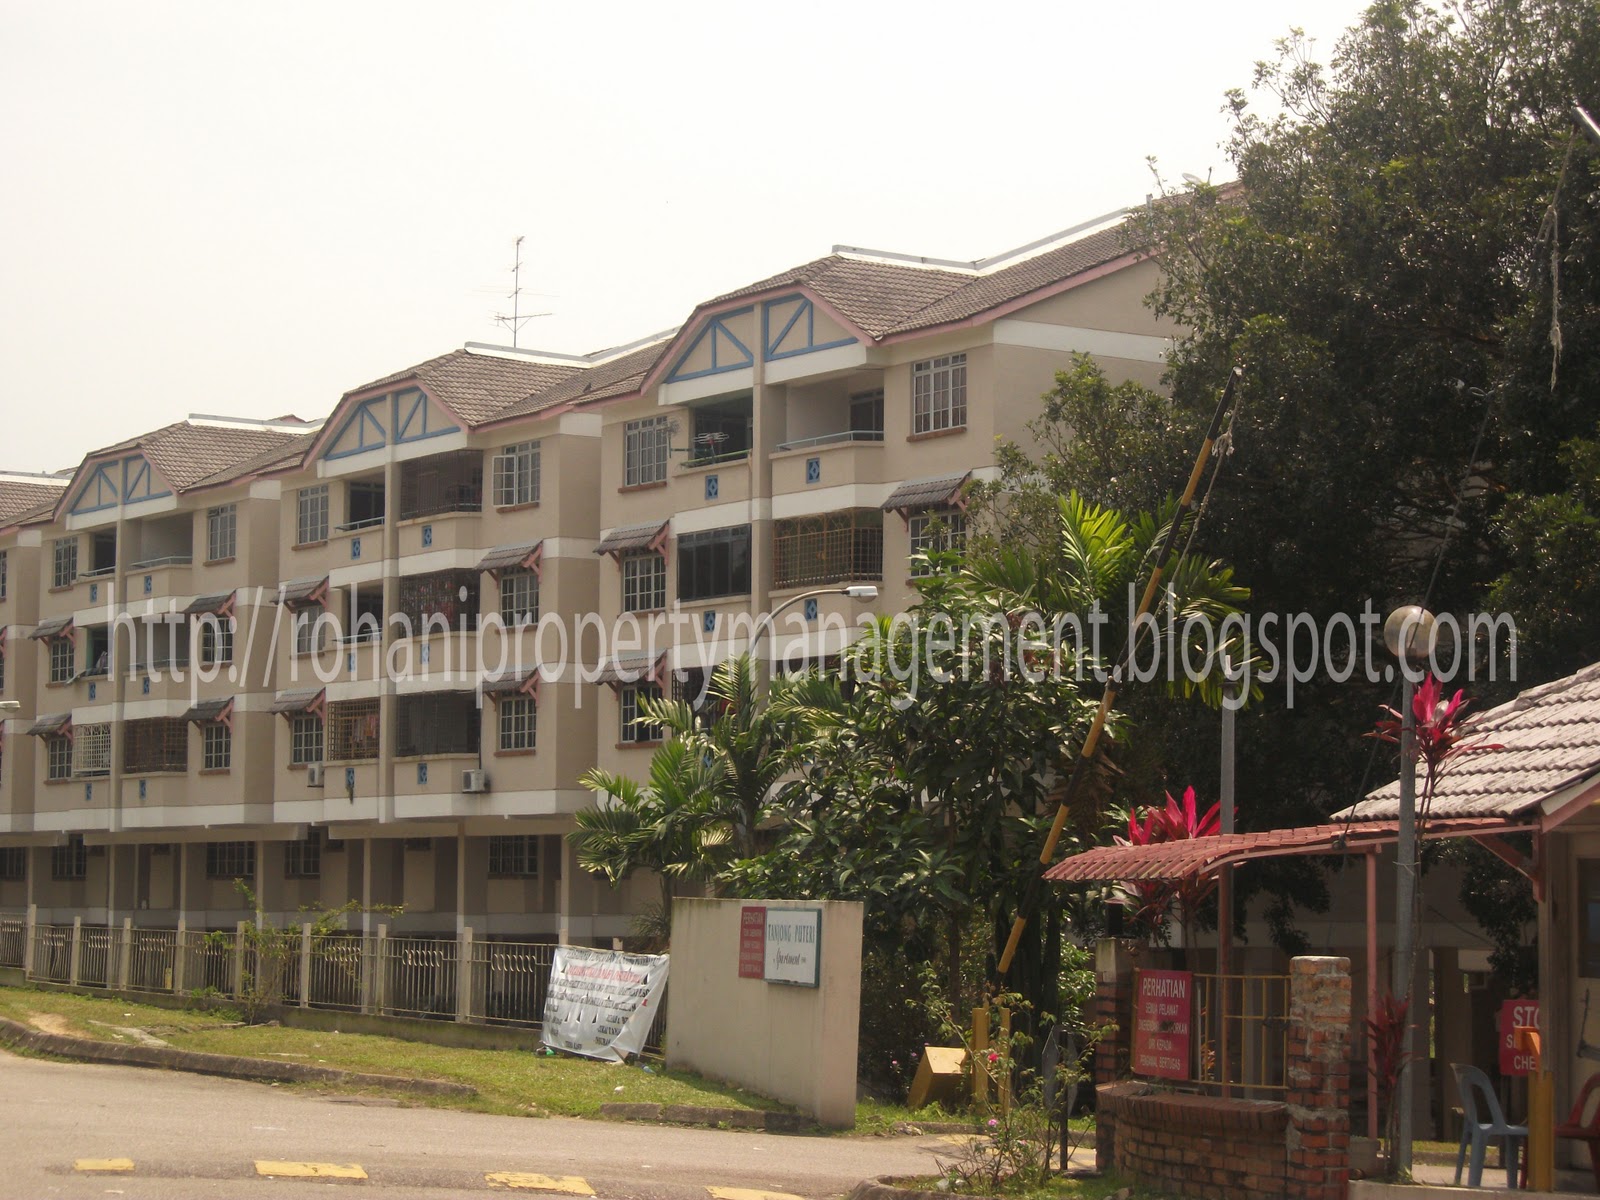 Rohani Property Managment: Tanjung Puteri Resort Pasir 